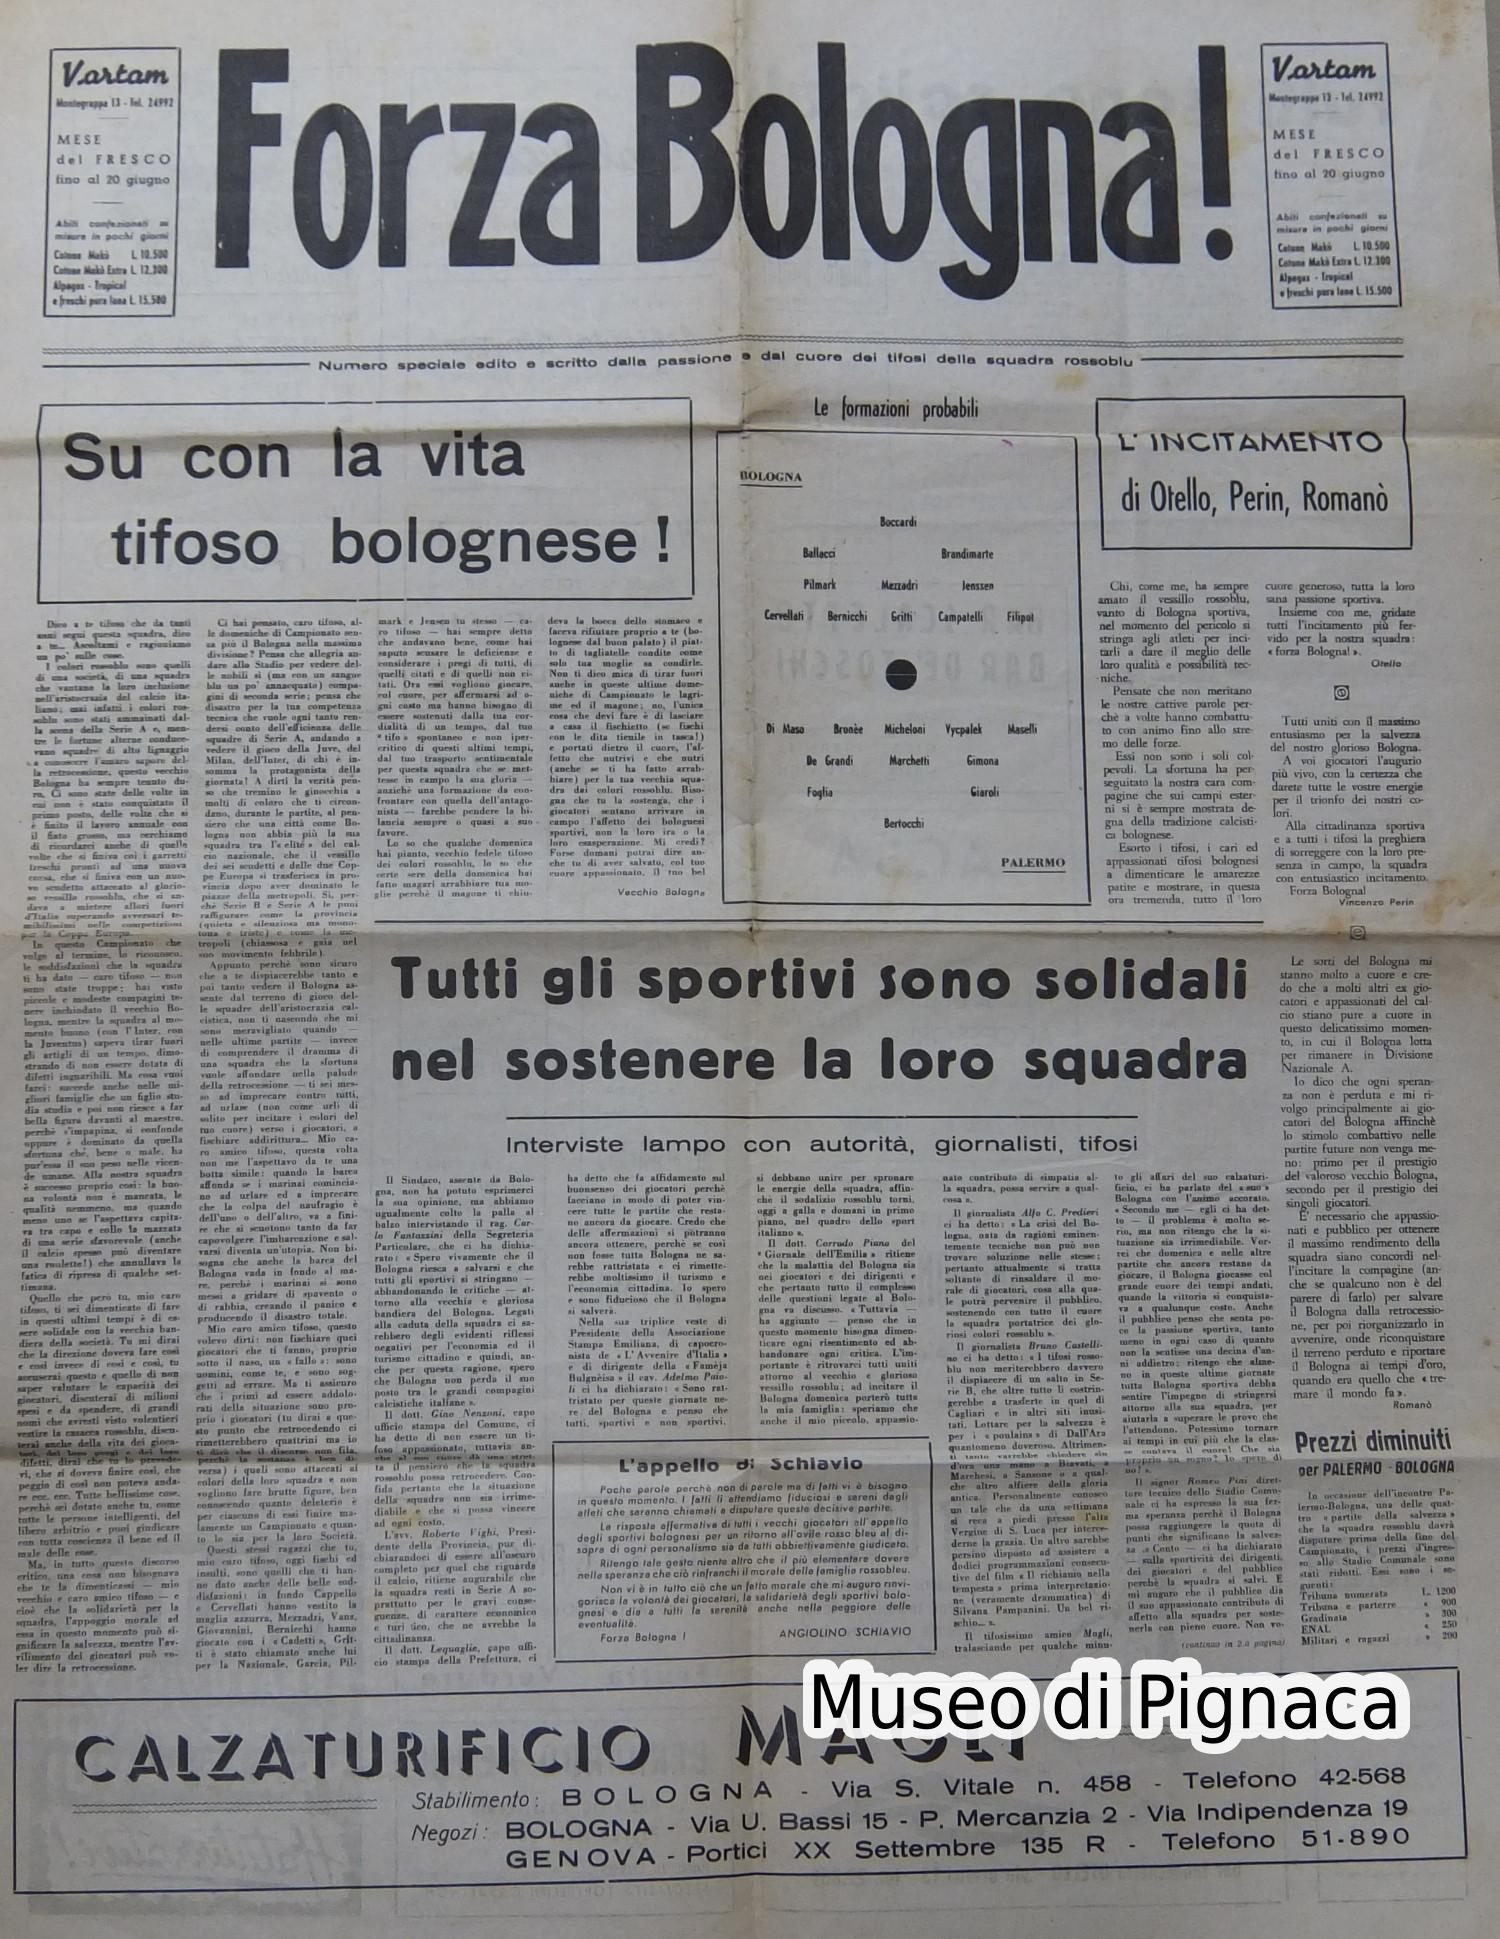 1951 Foglio doppio FORZA BOLOGNA distribuito per richiamare i tifosi ad aiutare la squadra in difficoltà